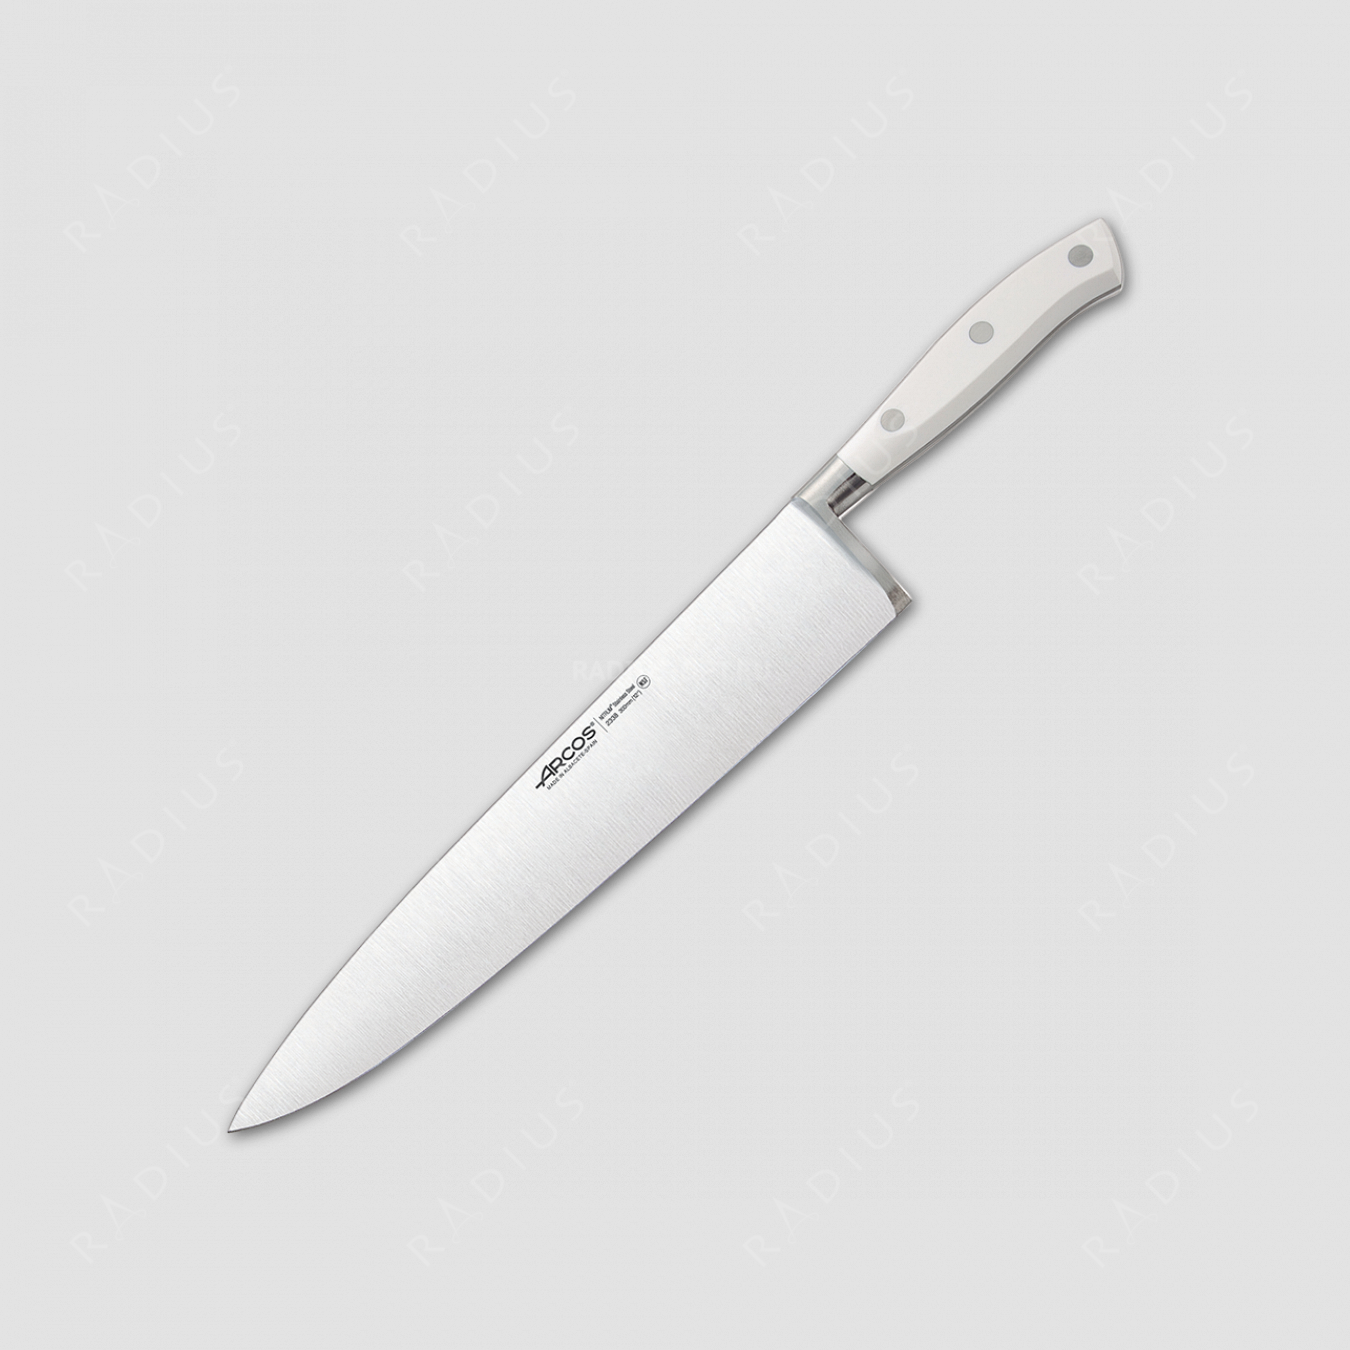 Профессиональный поварской кухонный нож 30 см, серия Riviera Blanca, ARCOS, Испания